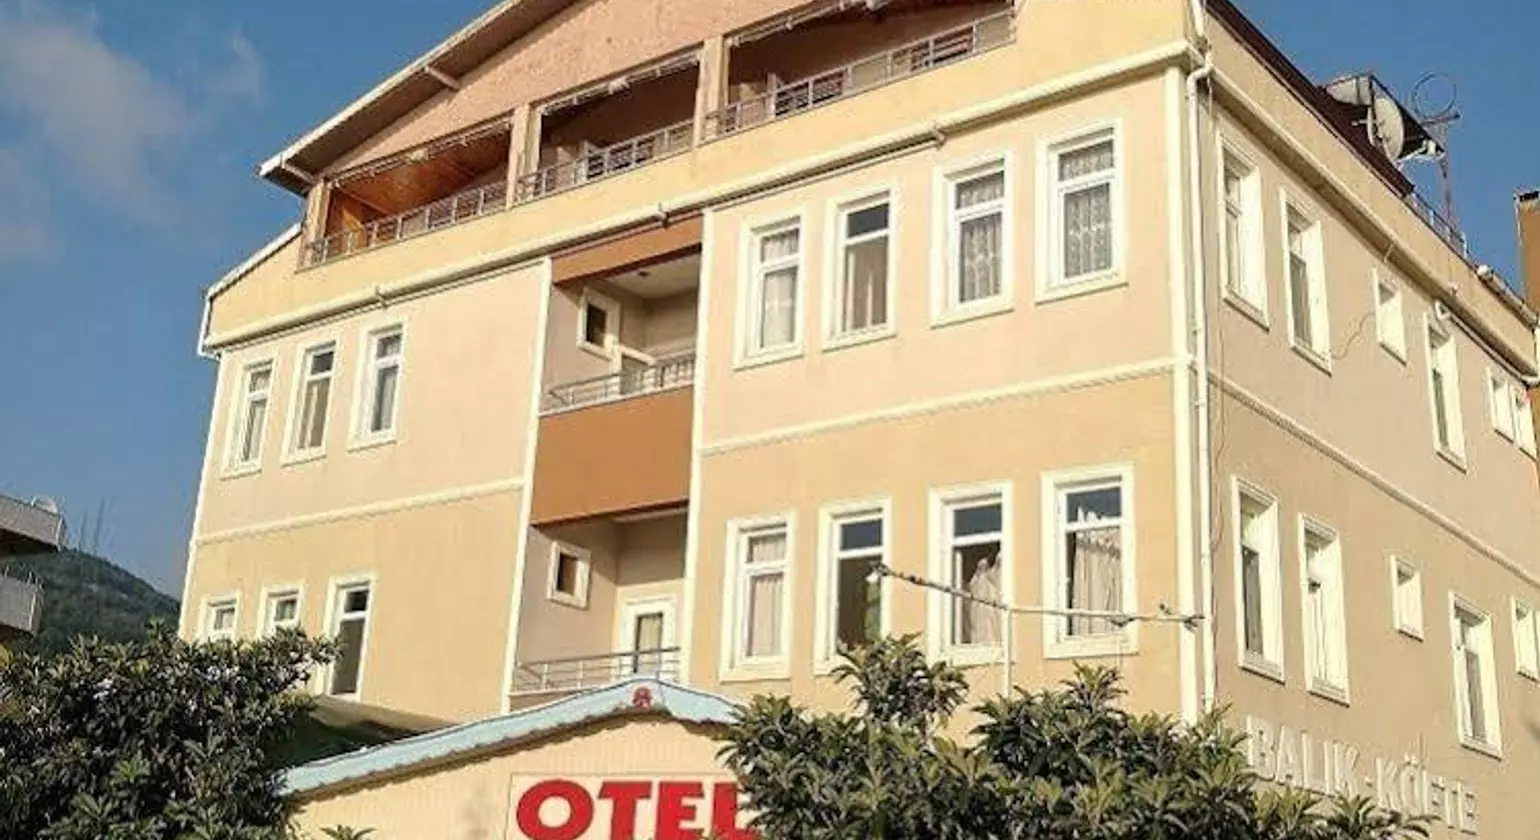 Yali Otel